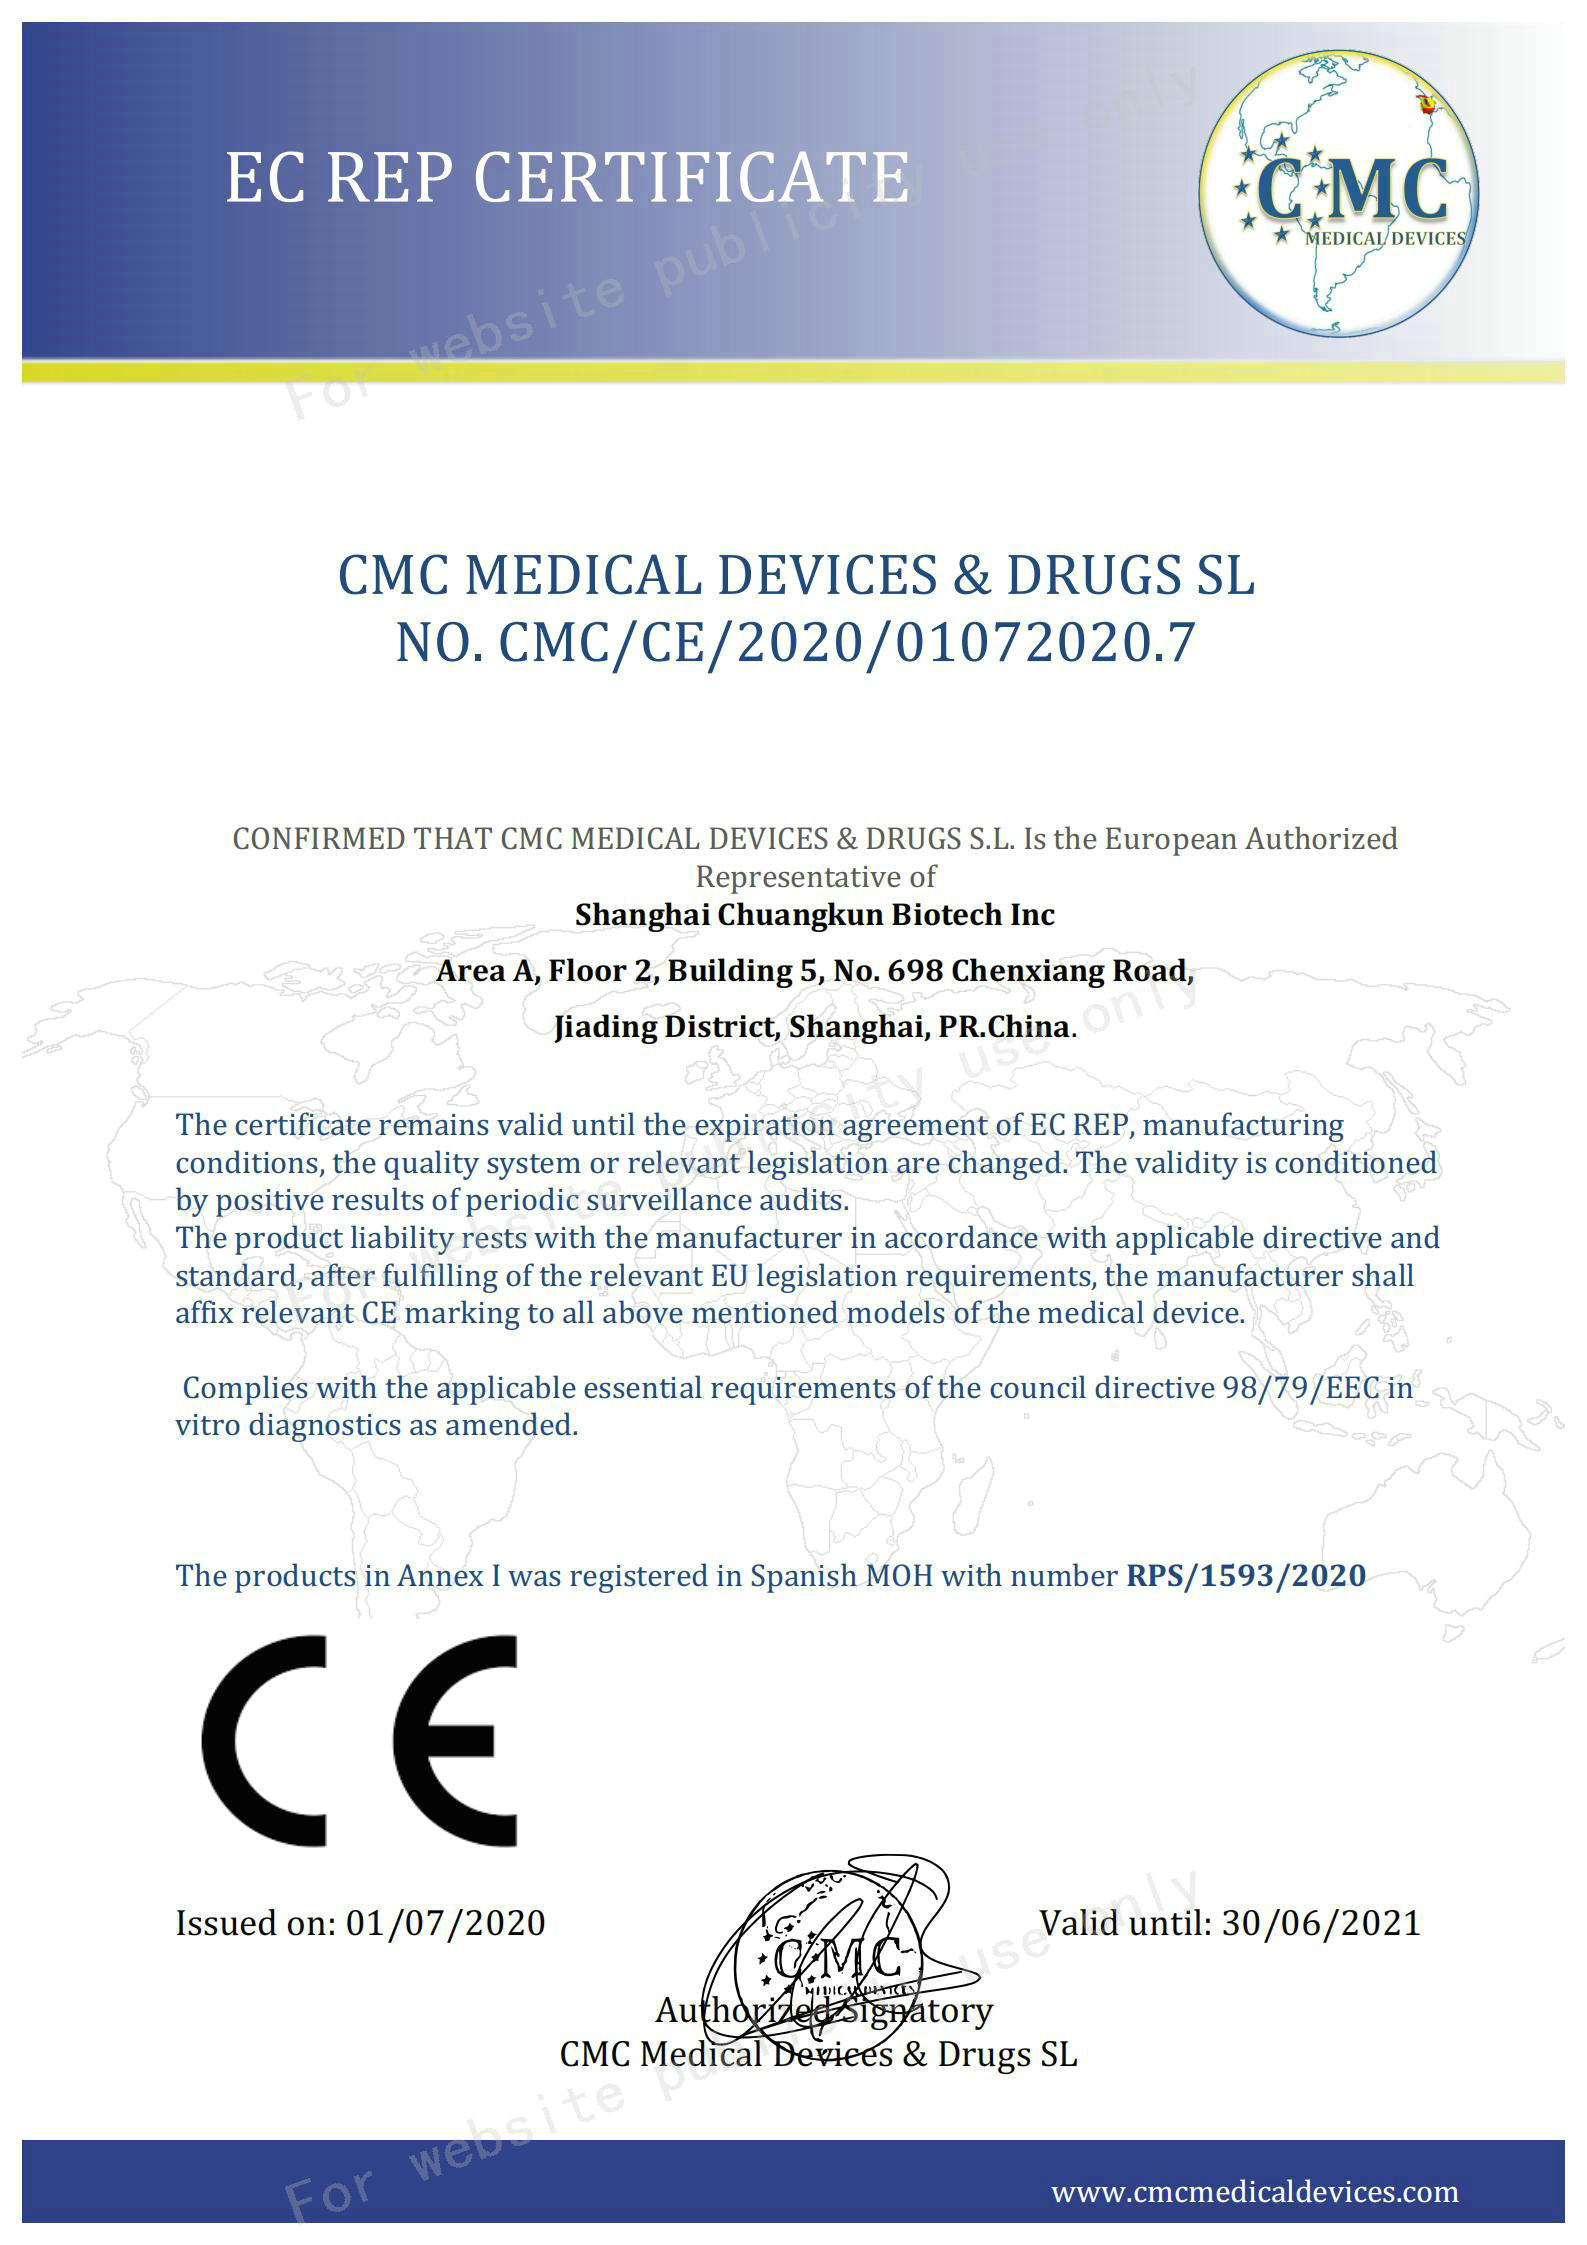 02 صفحة شهادة CE